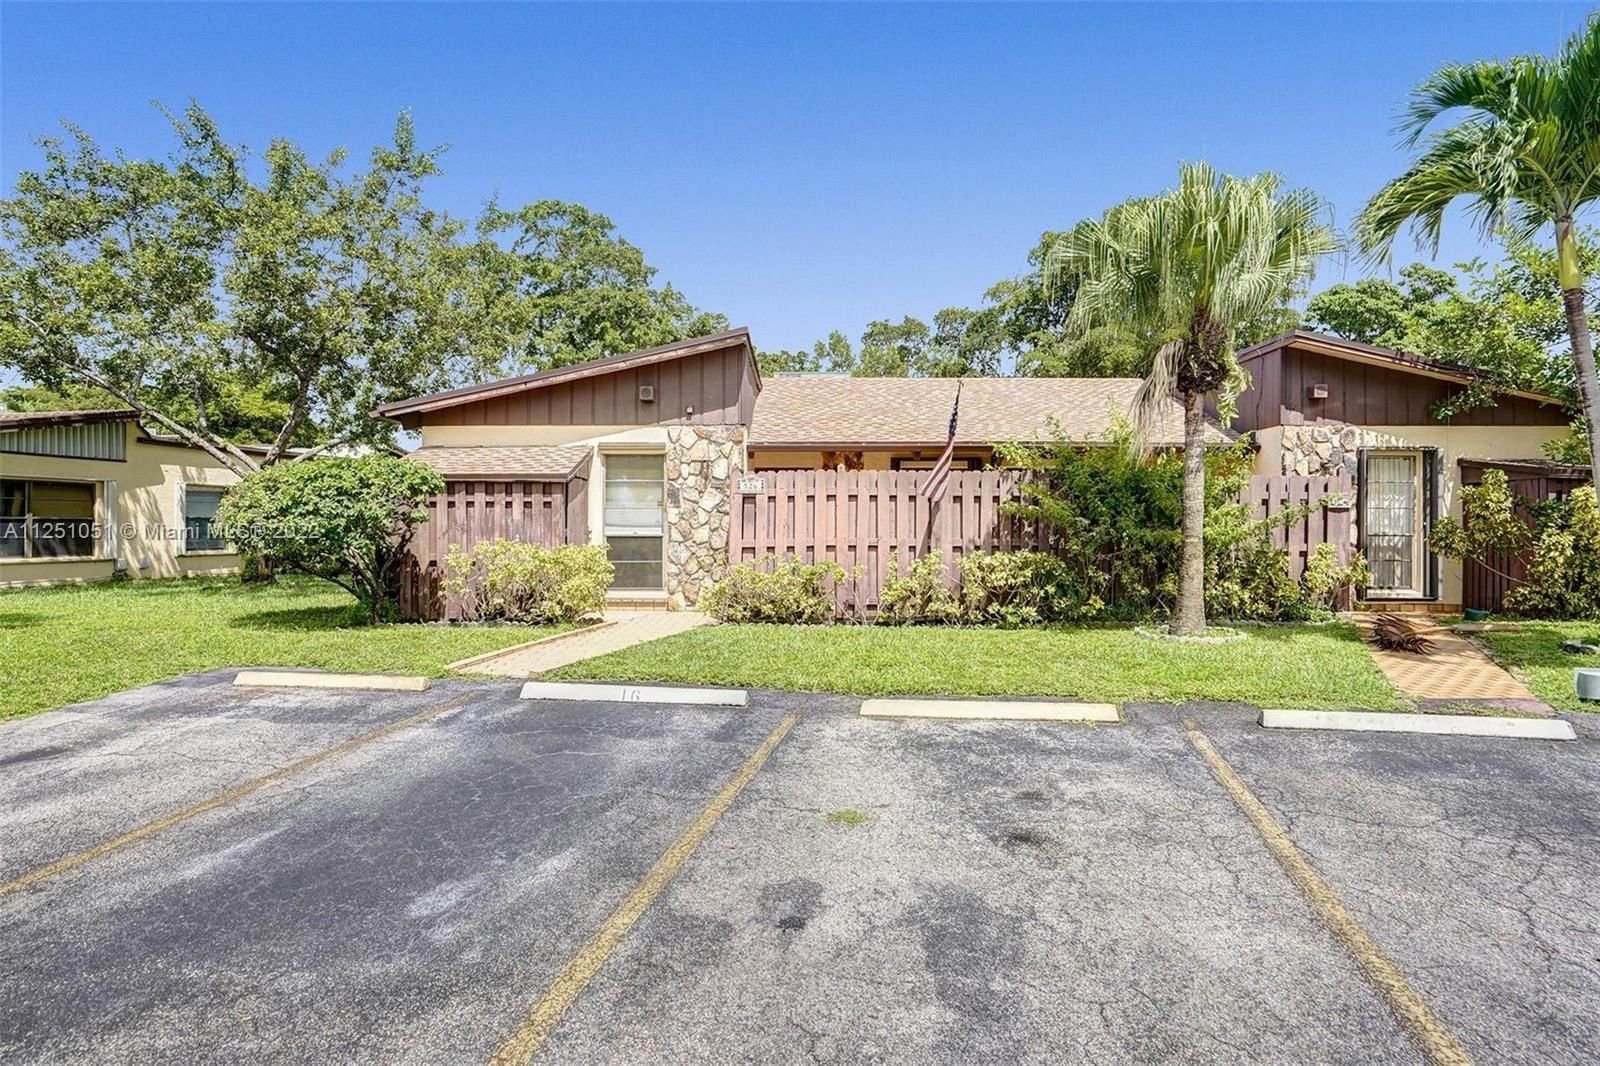 Real estate property located at 526 Briarwood Cir #1-49, Broward County, Hollywood, FL